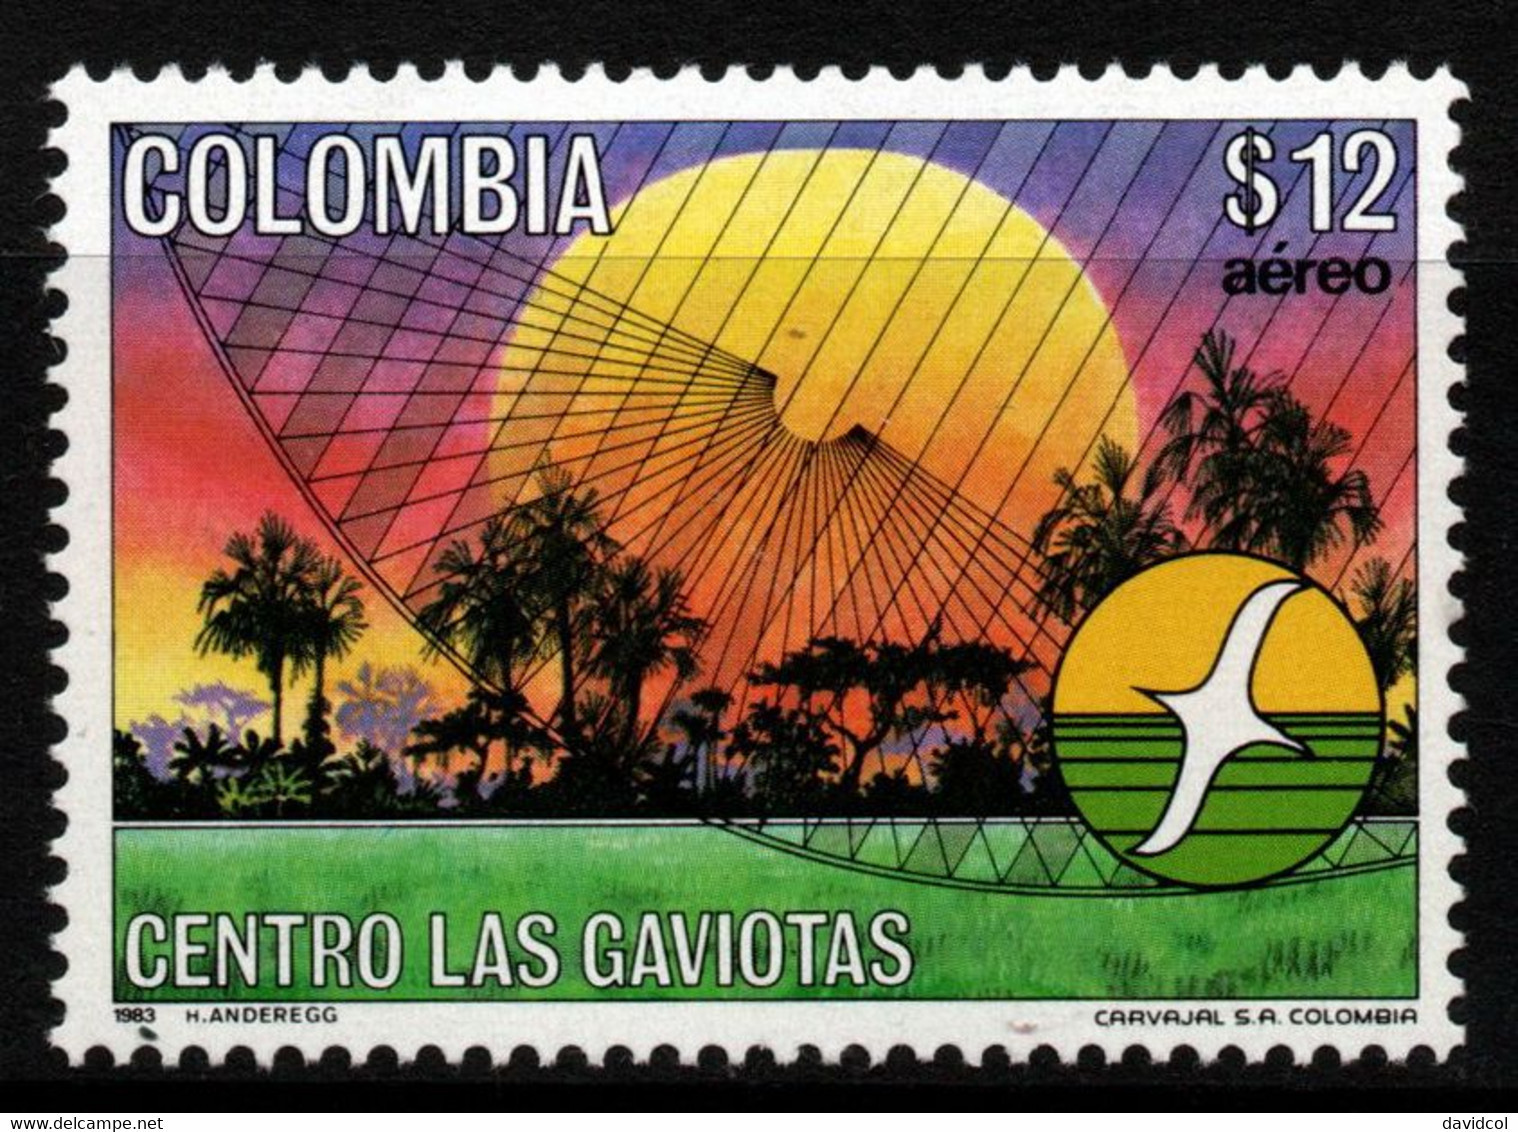 03- KOLUMBIEN - 1983- MI#:1611- MNH- “LAS GAVIOTAS” CENTER - Colombie